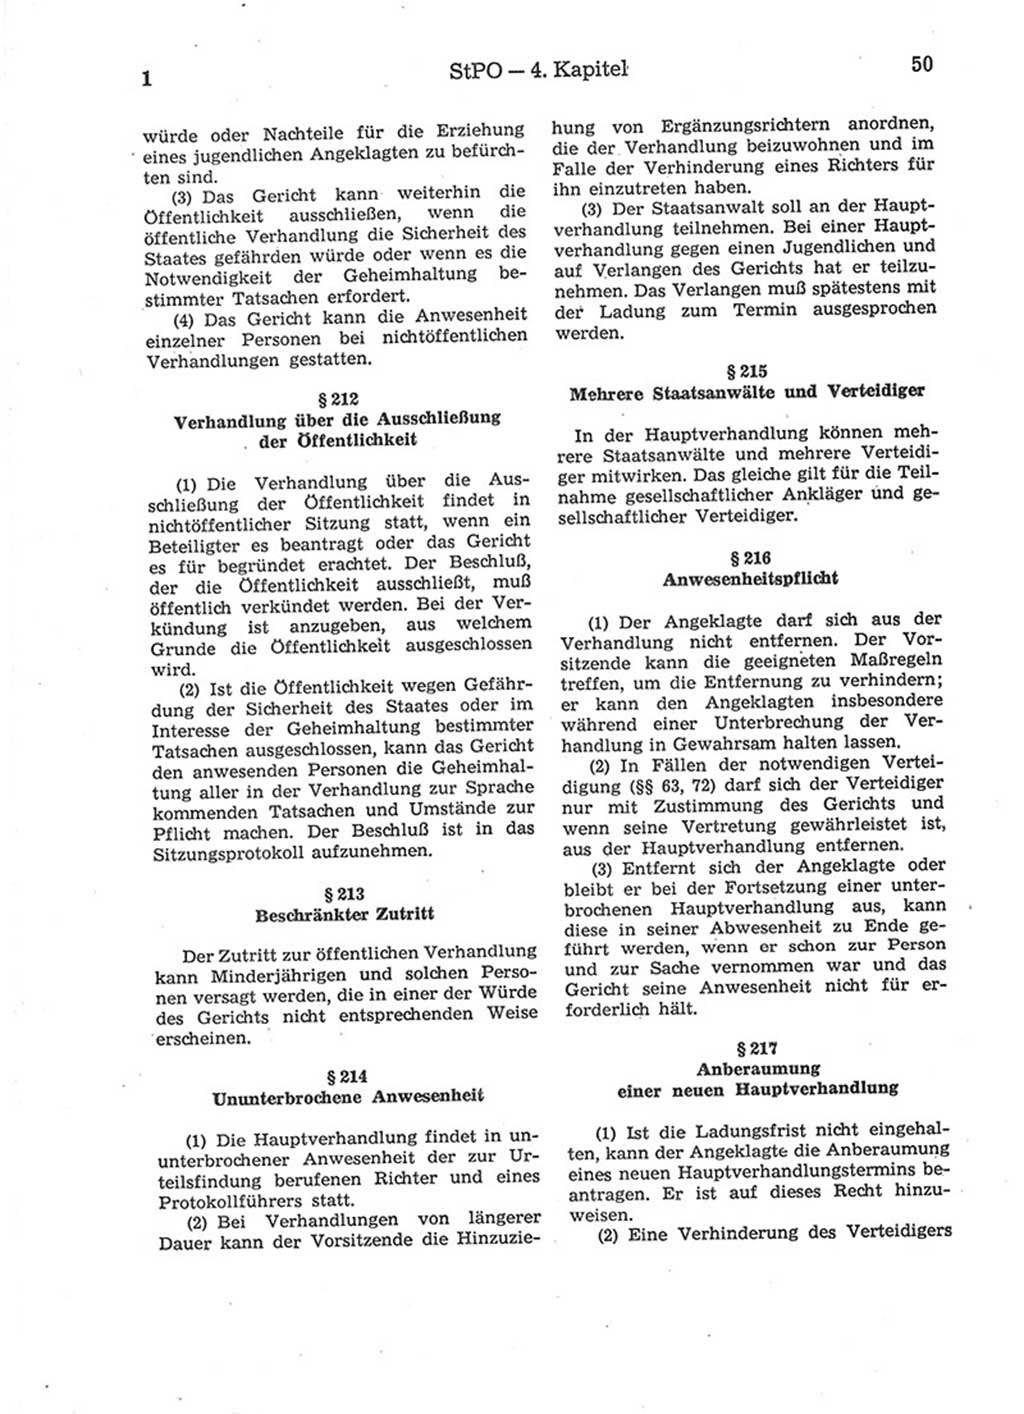 Strafprozeßordnung (StPO) der Deutschen Demokratischen Republik (DDR) 1975, Seite 50 (StPO DDR 1974, S. 50)